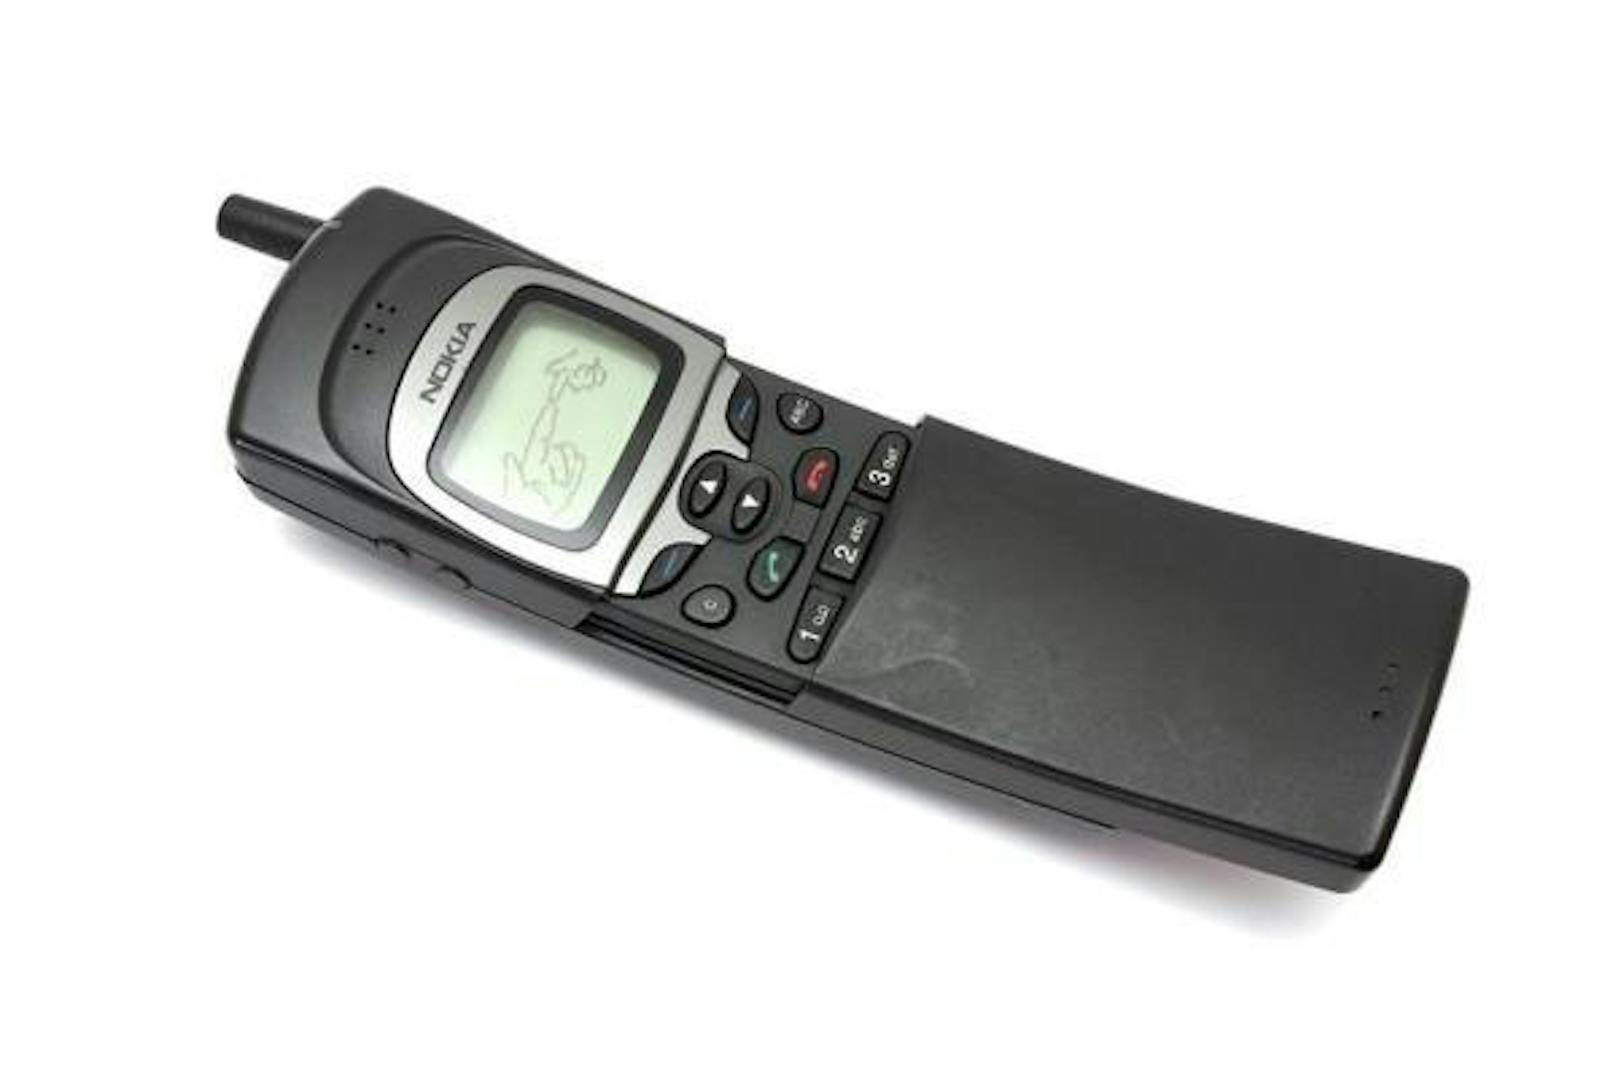 Nokia 8110: Ein Business-Handy, das 1996 vorgestellt wurde. Zu großer Berühmtheit kam das Gerät, als es 1999 im Film "The Matrix" eingesetzt wurde, was Nokia ebenfalls populärer machte.